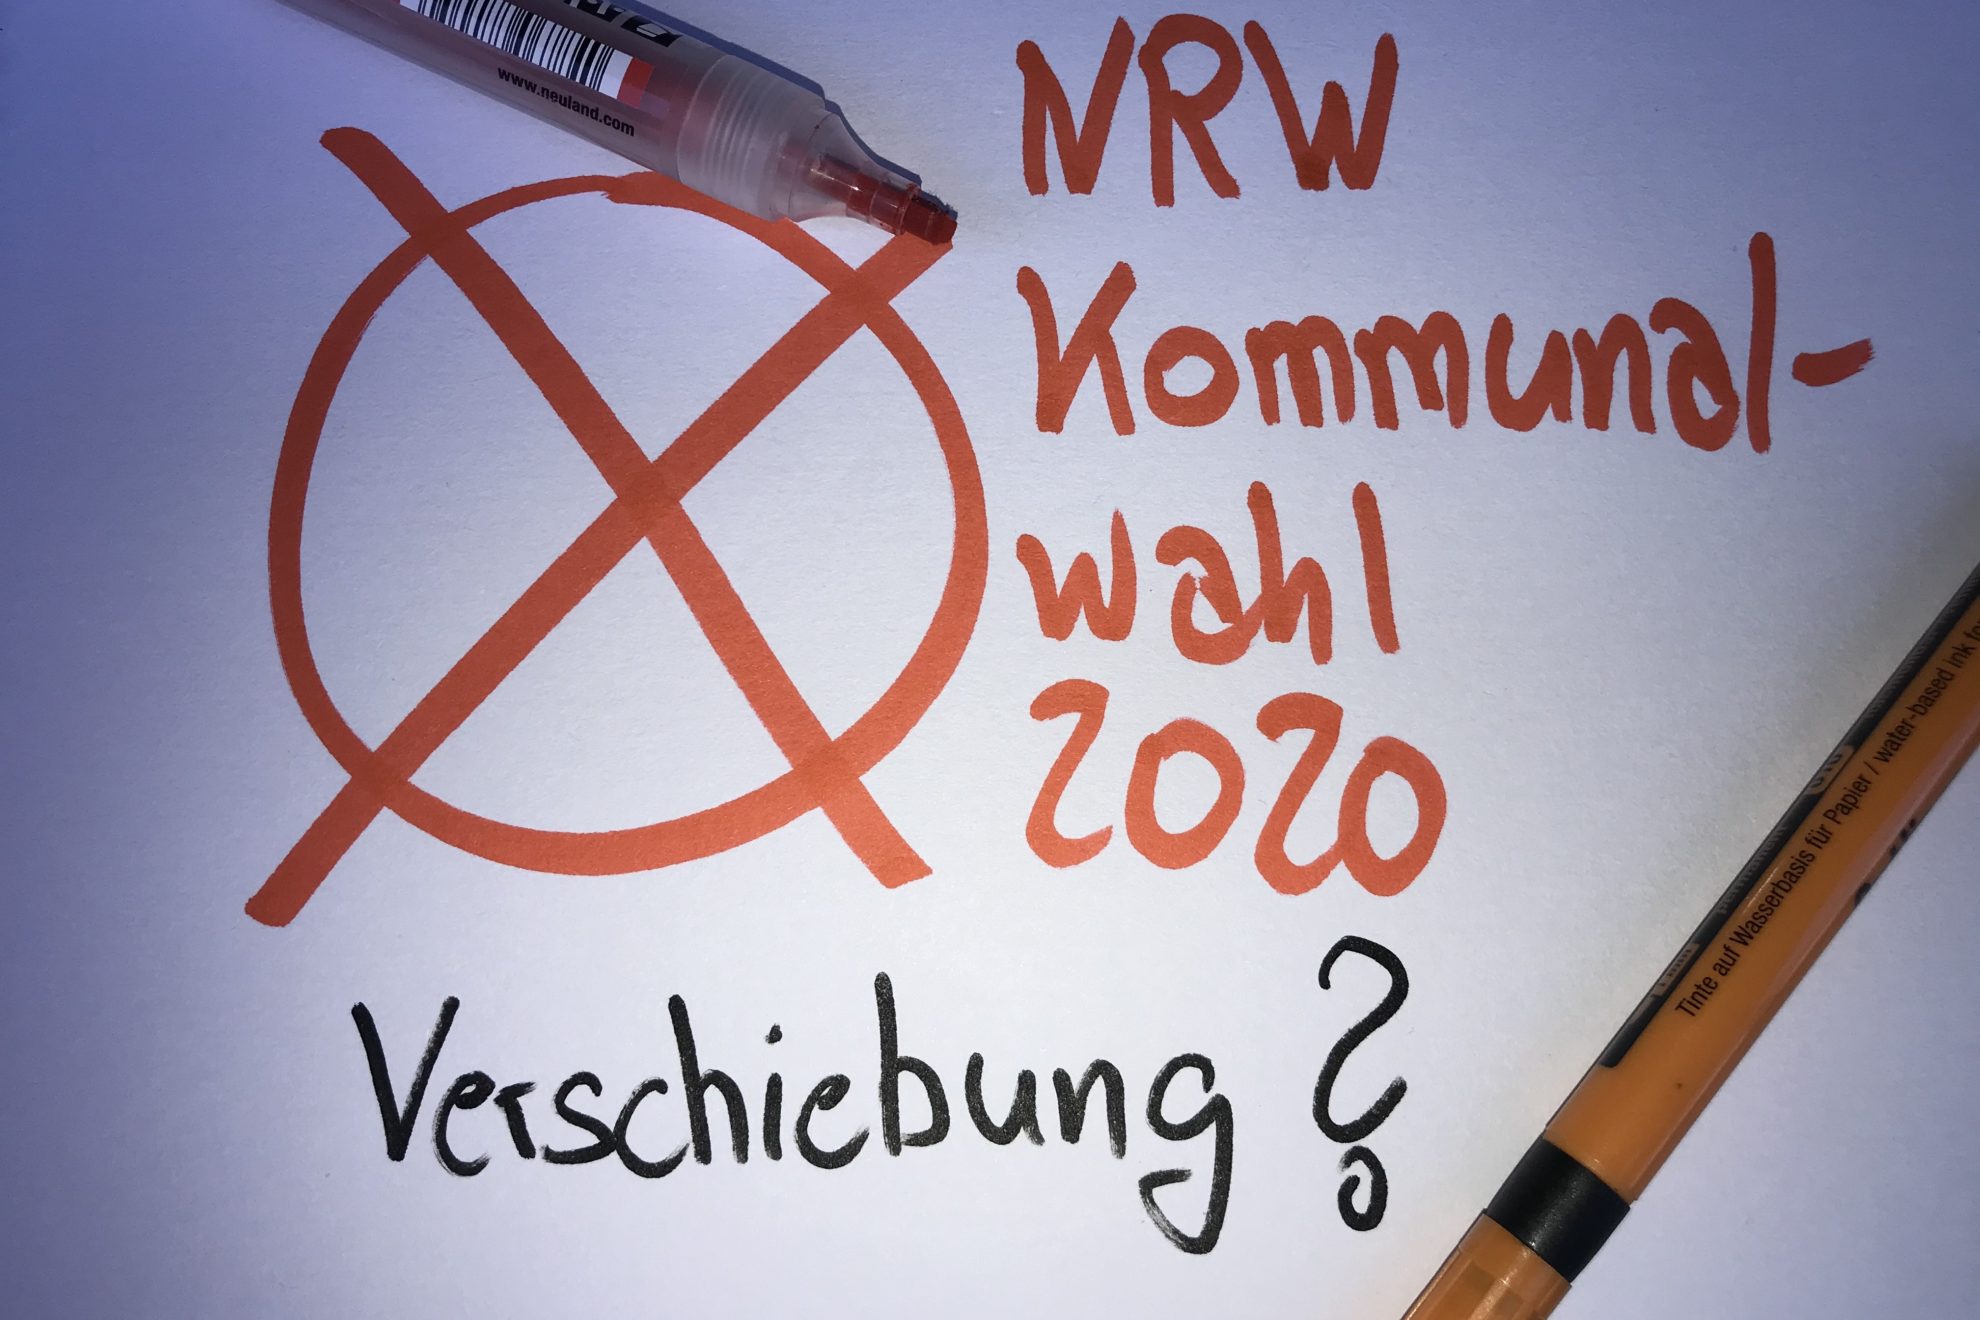 Termin NRW Kommunalwahl 2020 - Verschiebung?